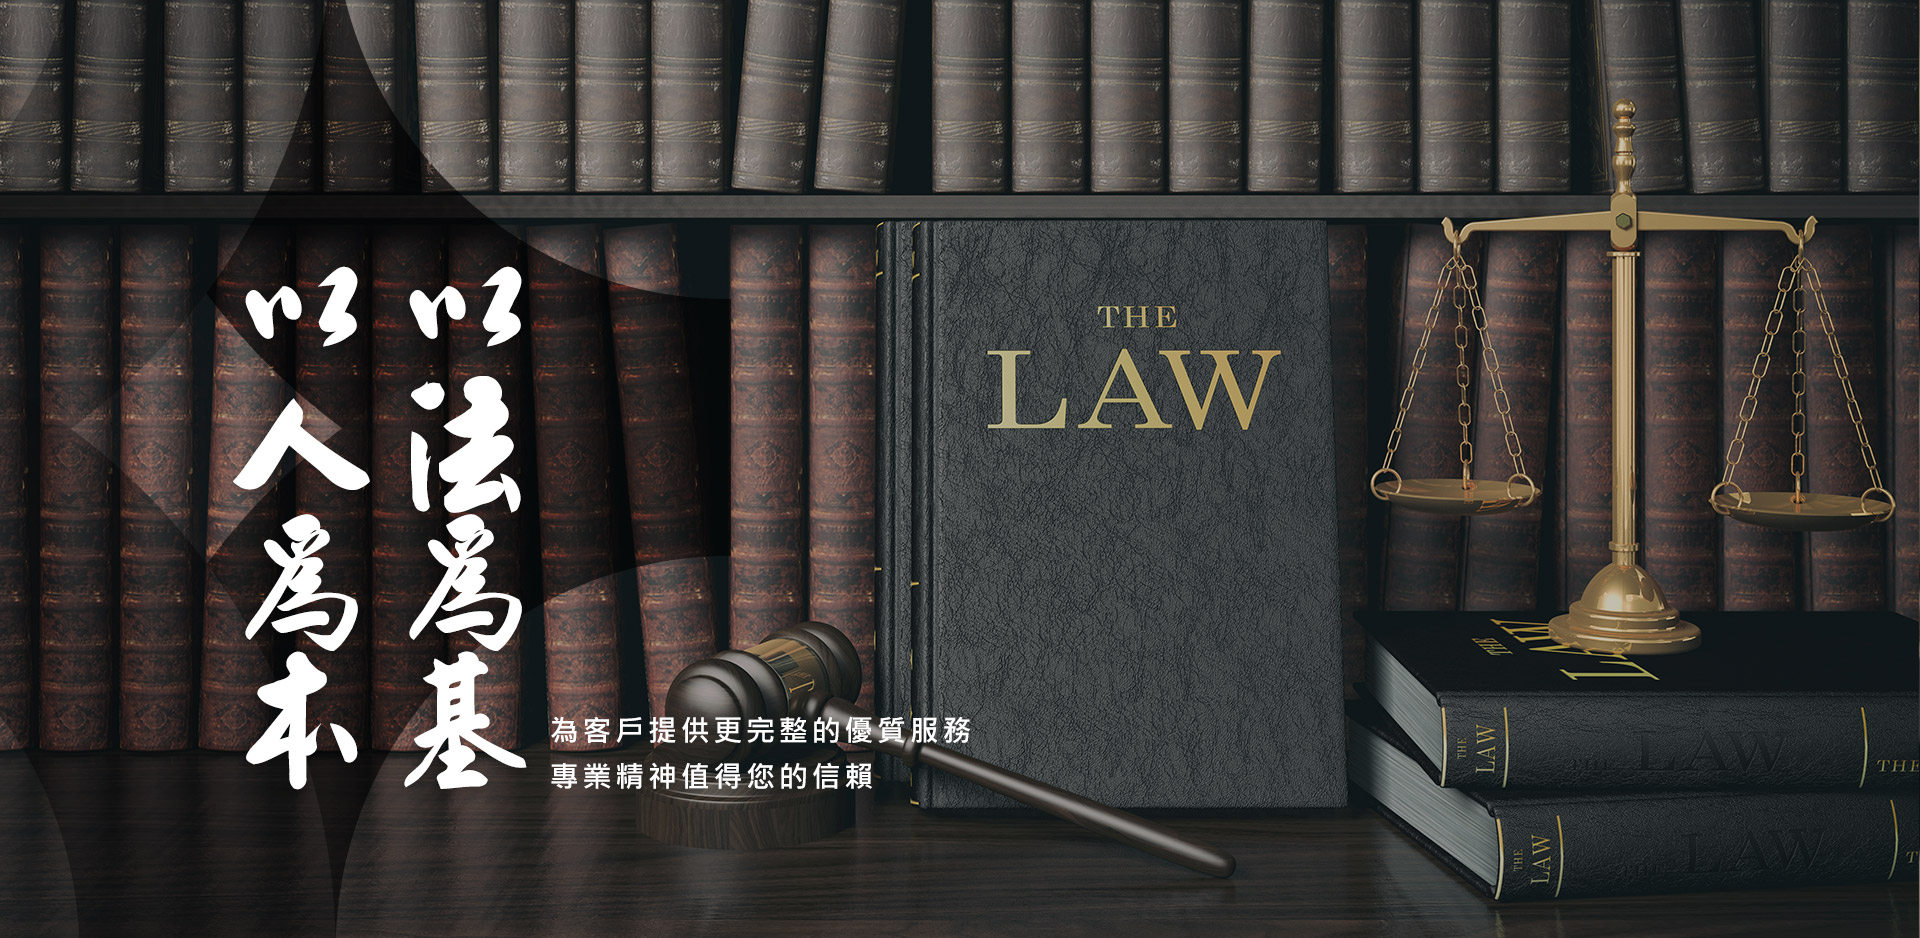 律師事務所台北法律諮詢好處多多